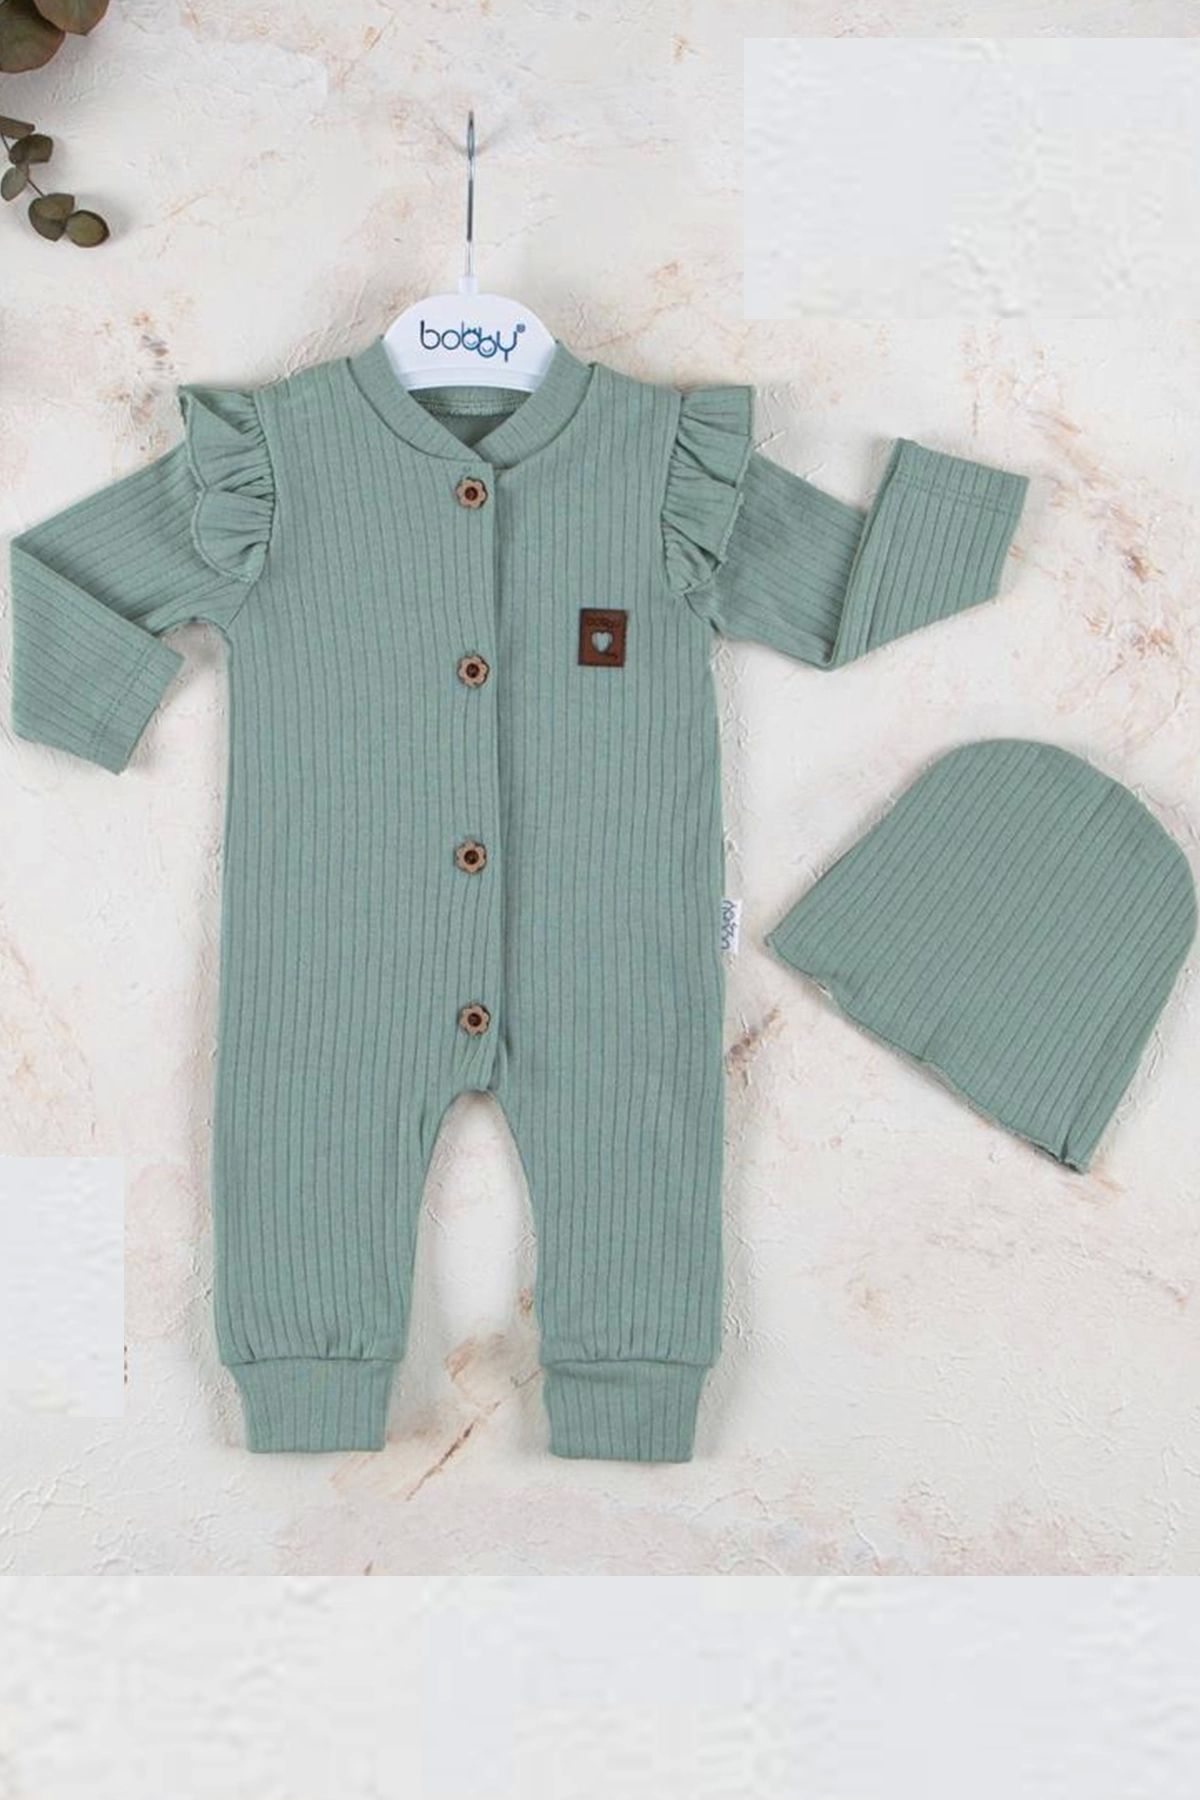 Babydonat Boydan Düğmeli Şapkalı % 100 Pamuk Kız Bebek Tulumu